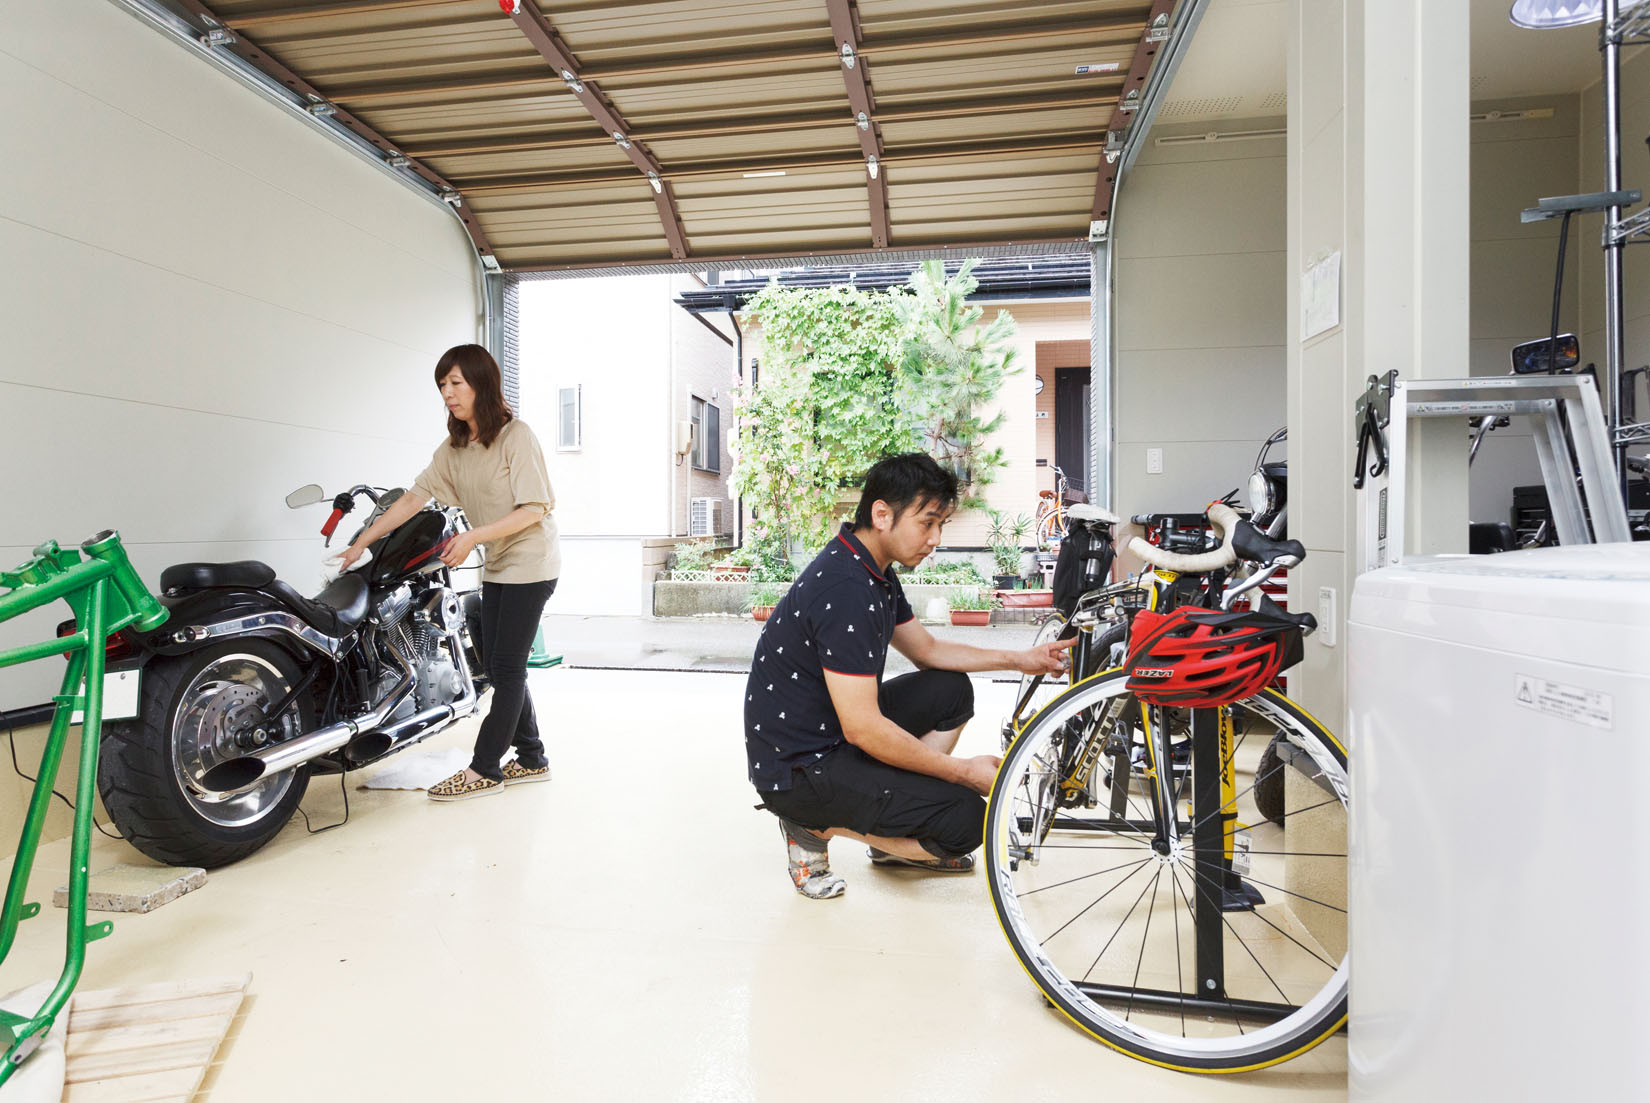 インナーガレージの注文住宅でバイクを整備する夫婦